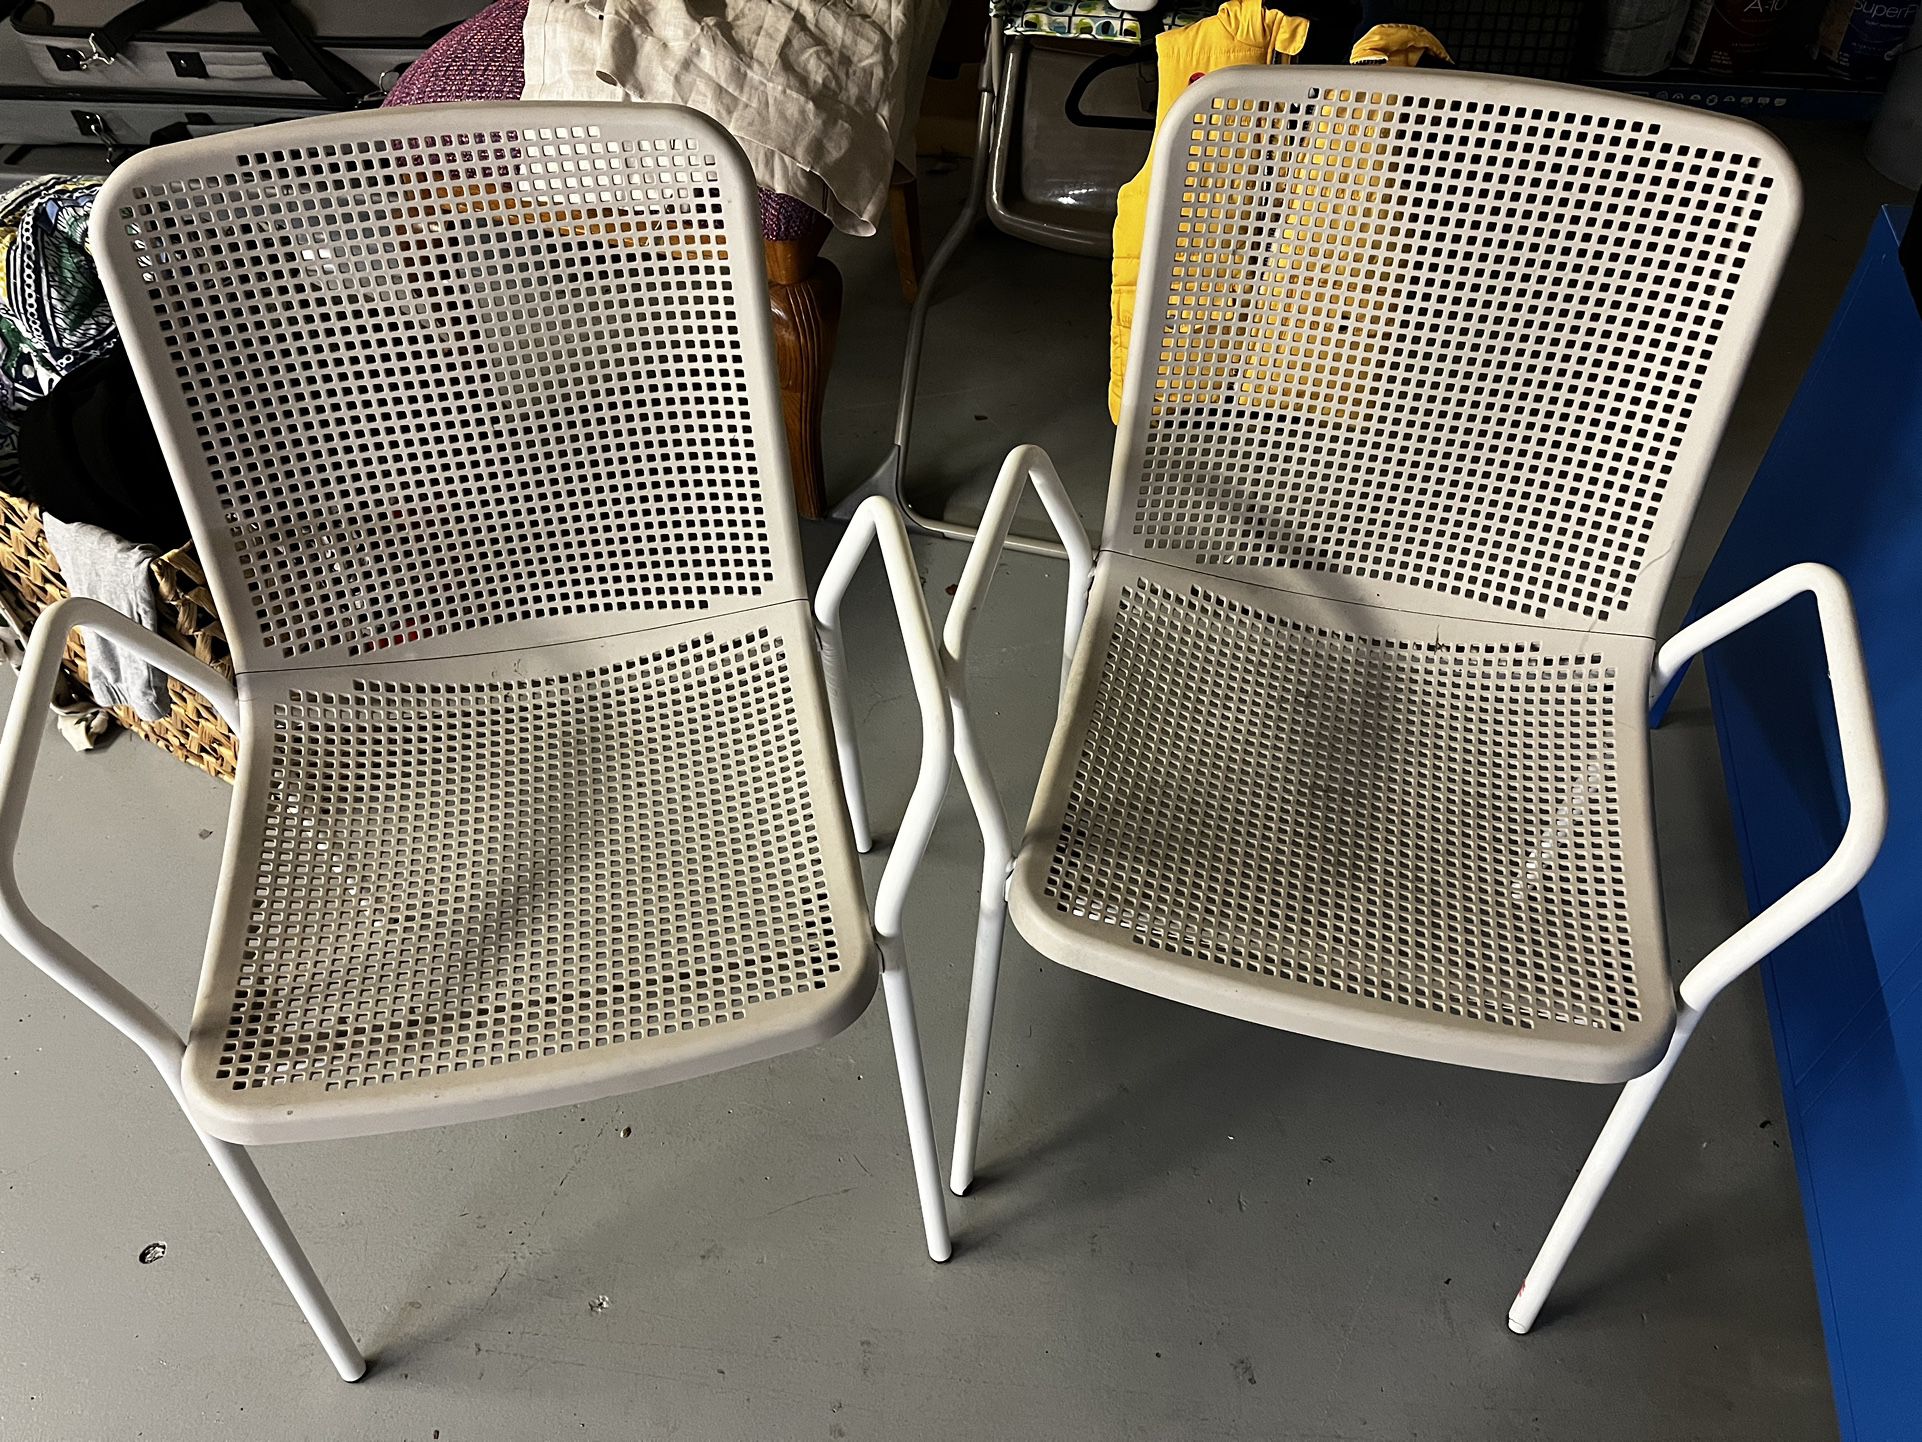 IKEA Indoor/Outdoor Chairs